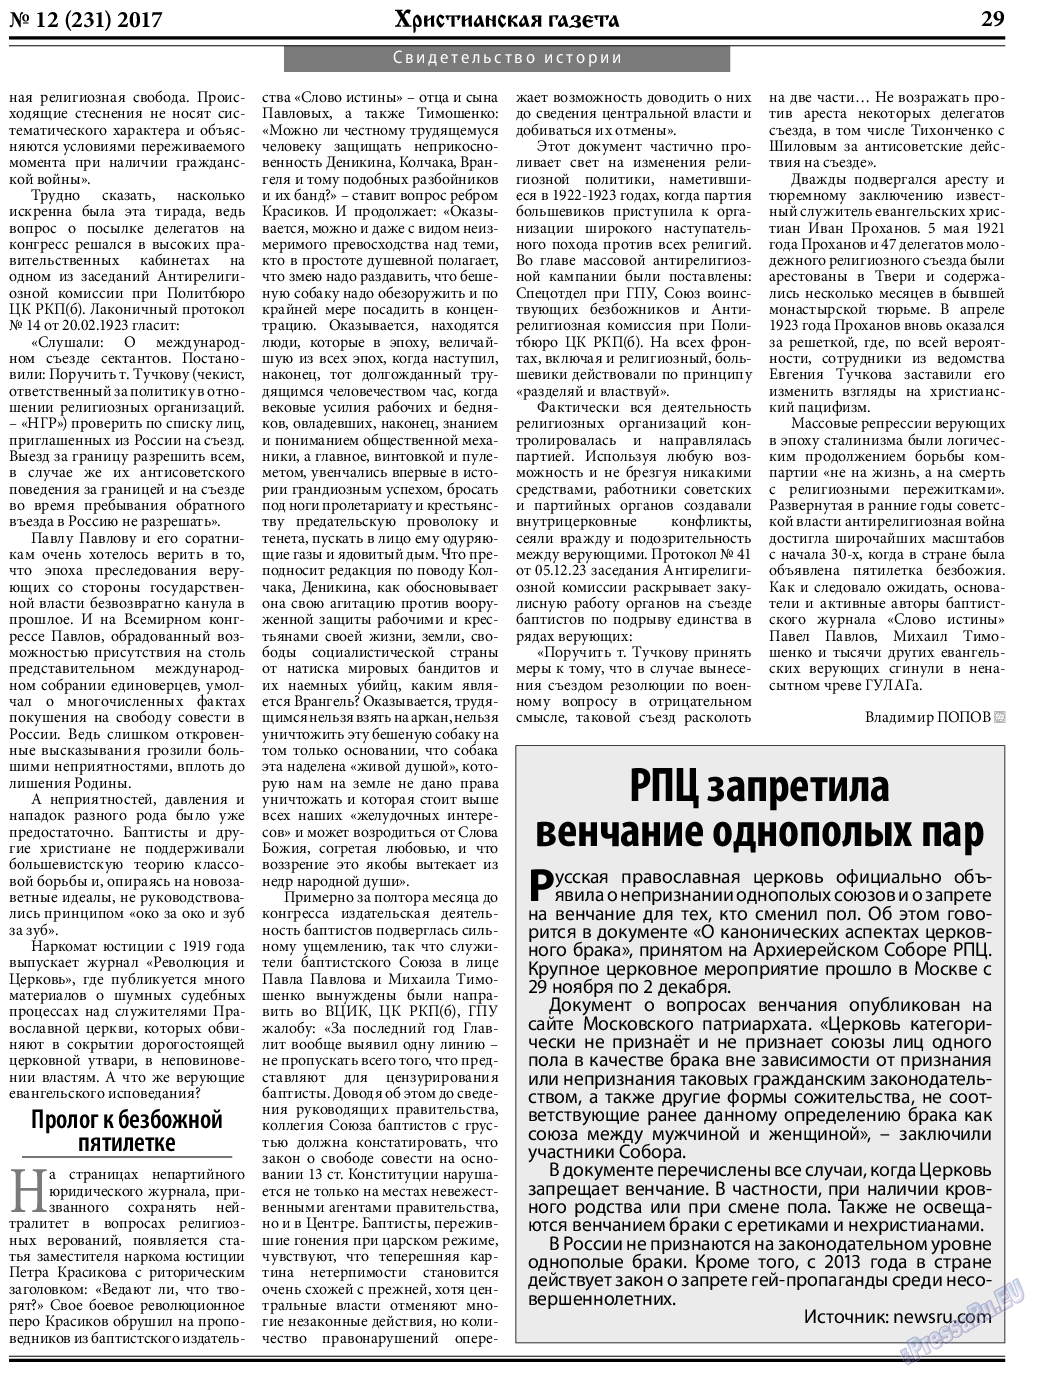 Христианская газета, газета. 2017 №12 стр.29